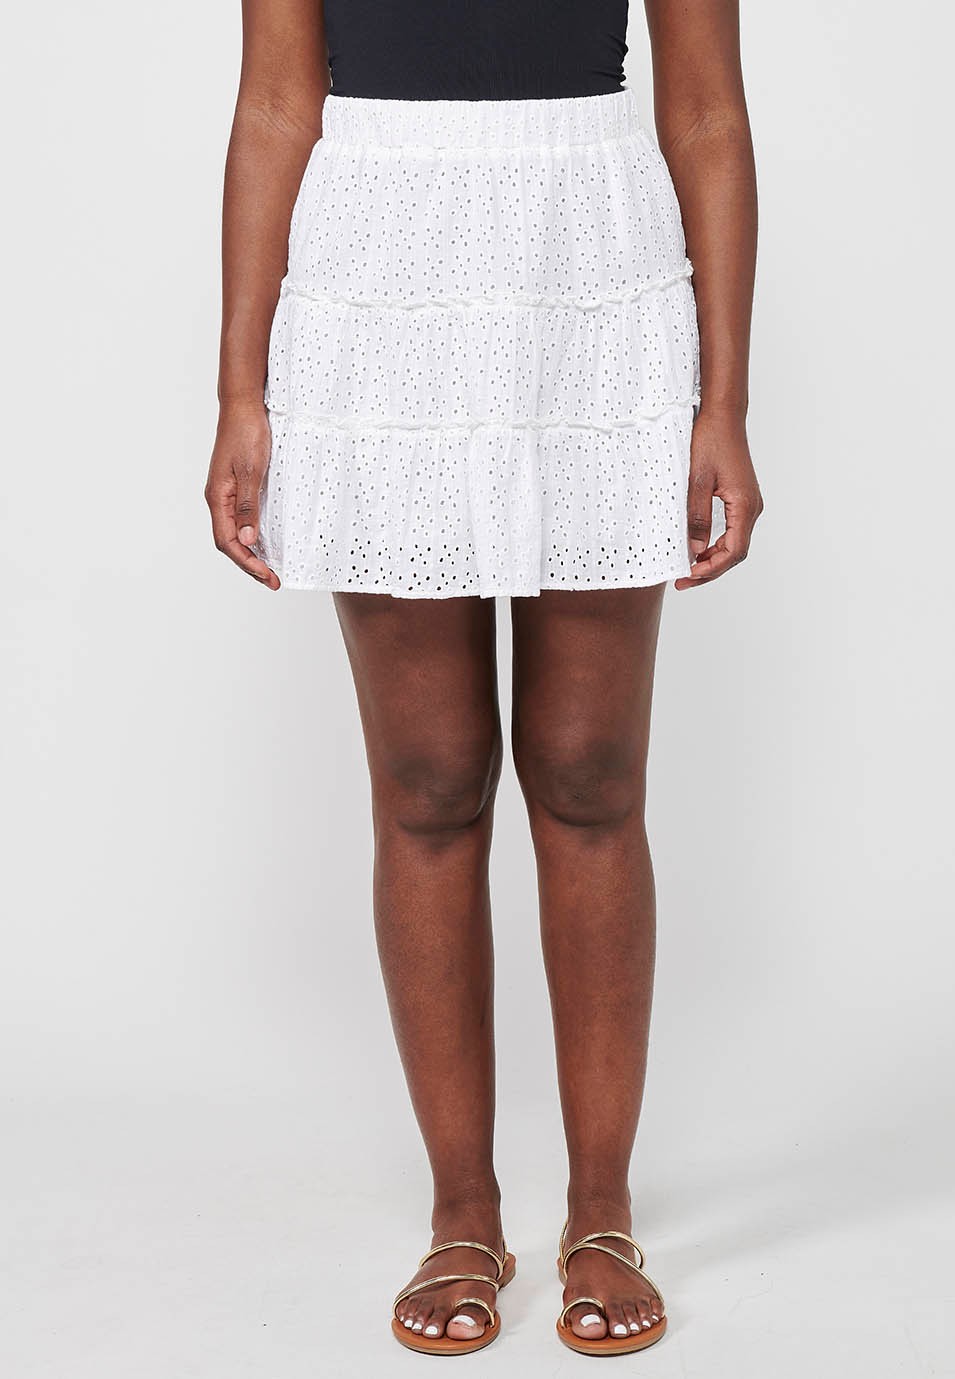 Falda corta de algodon, con volante y bordado, ajustada en cintura con goma elástica, color blanco para mujer